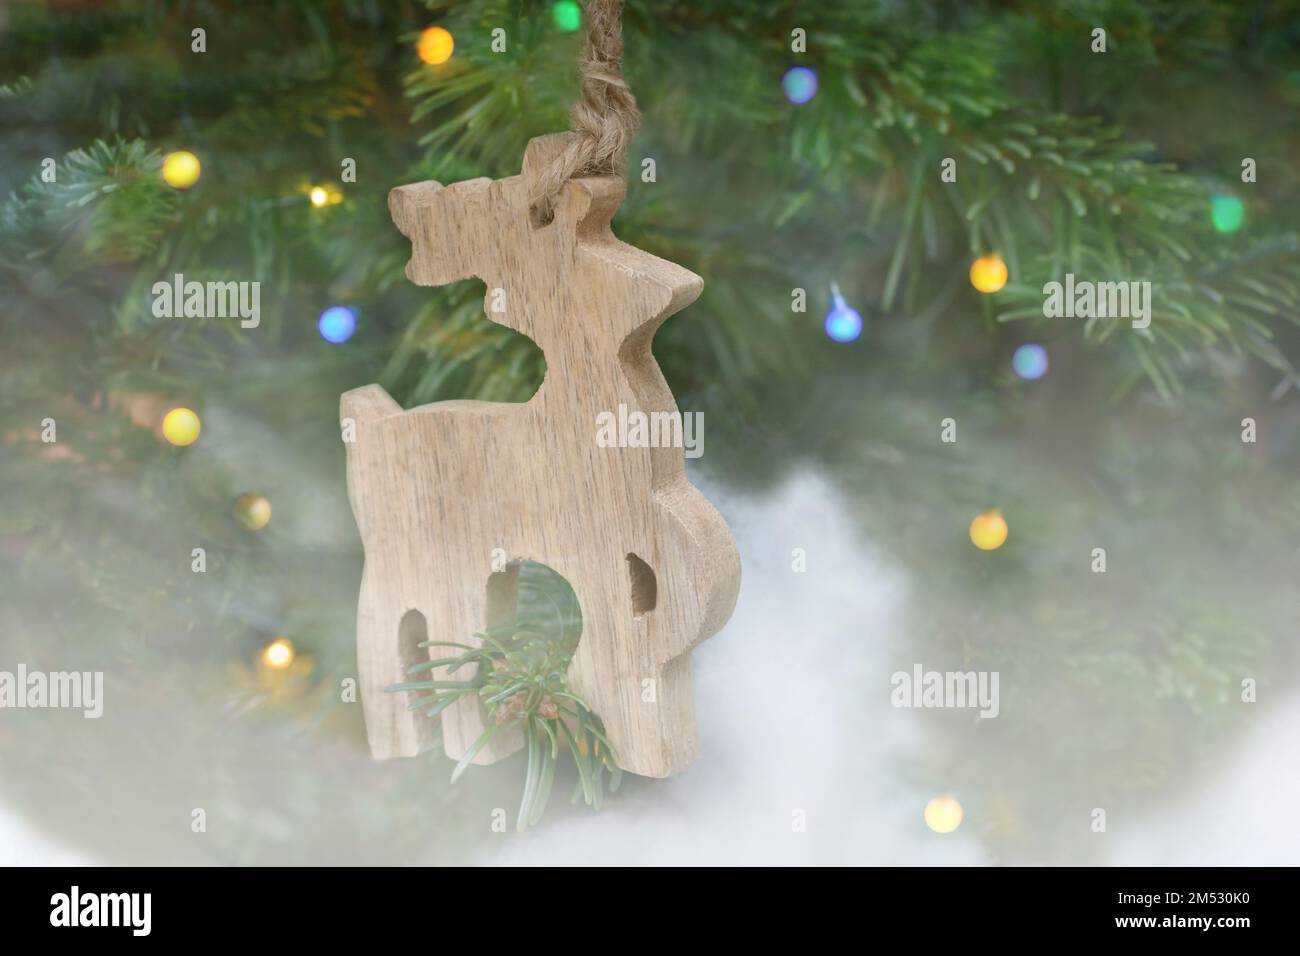 Decoración del árbol de Navidad, una figura de un ciervo de madera sobre un fondo borroso en un formato horizontal Foto de stock